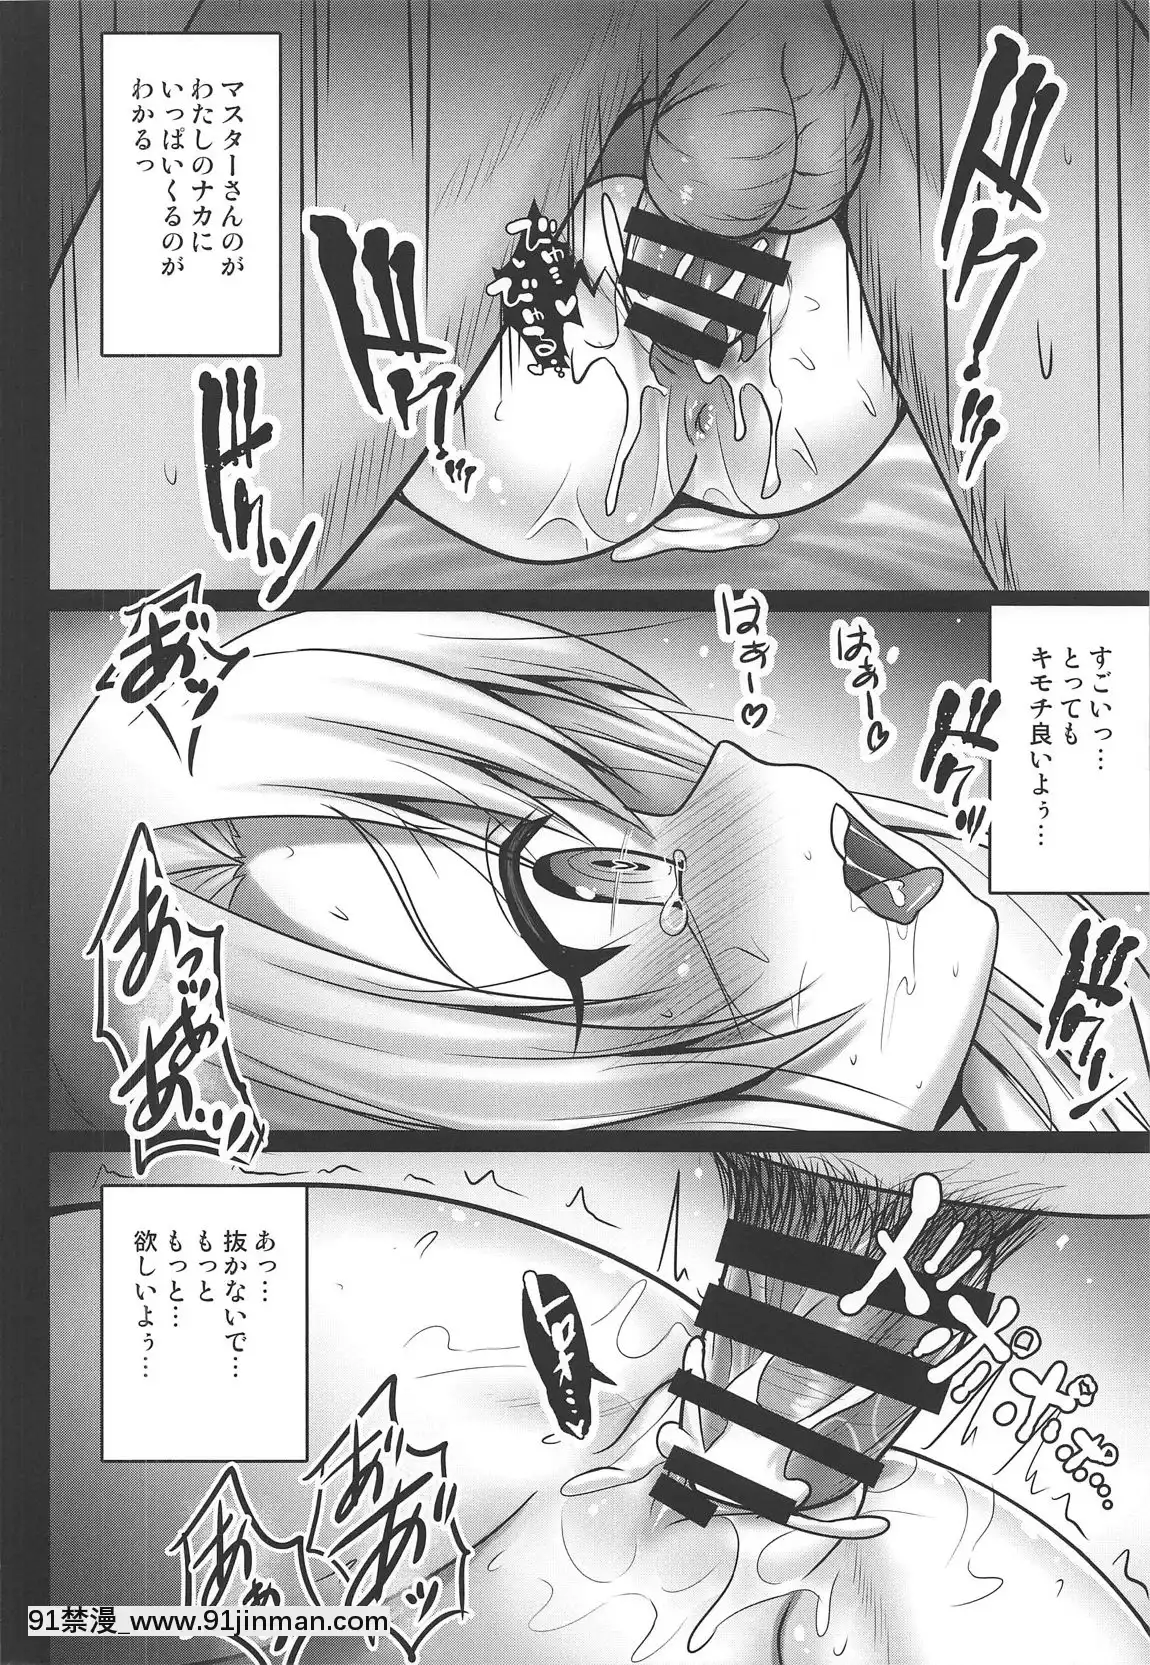 (COMIC1 ☆ 15)   [SHINING  (Shaian)]   Illya sẽ bóc lột tình dục bạn với khuôn mặt toro ♥   (FateGrand Order)【cung âu và tiểu niệm truyện tranh】